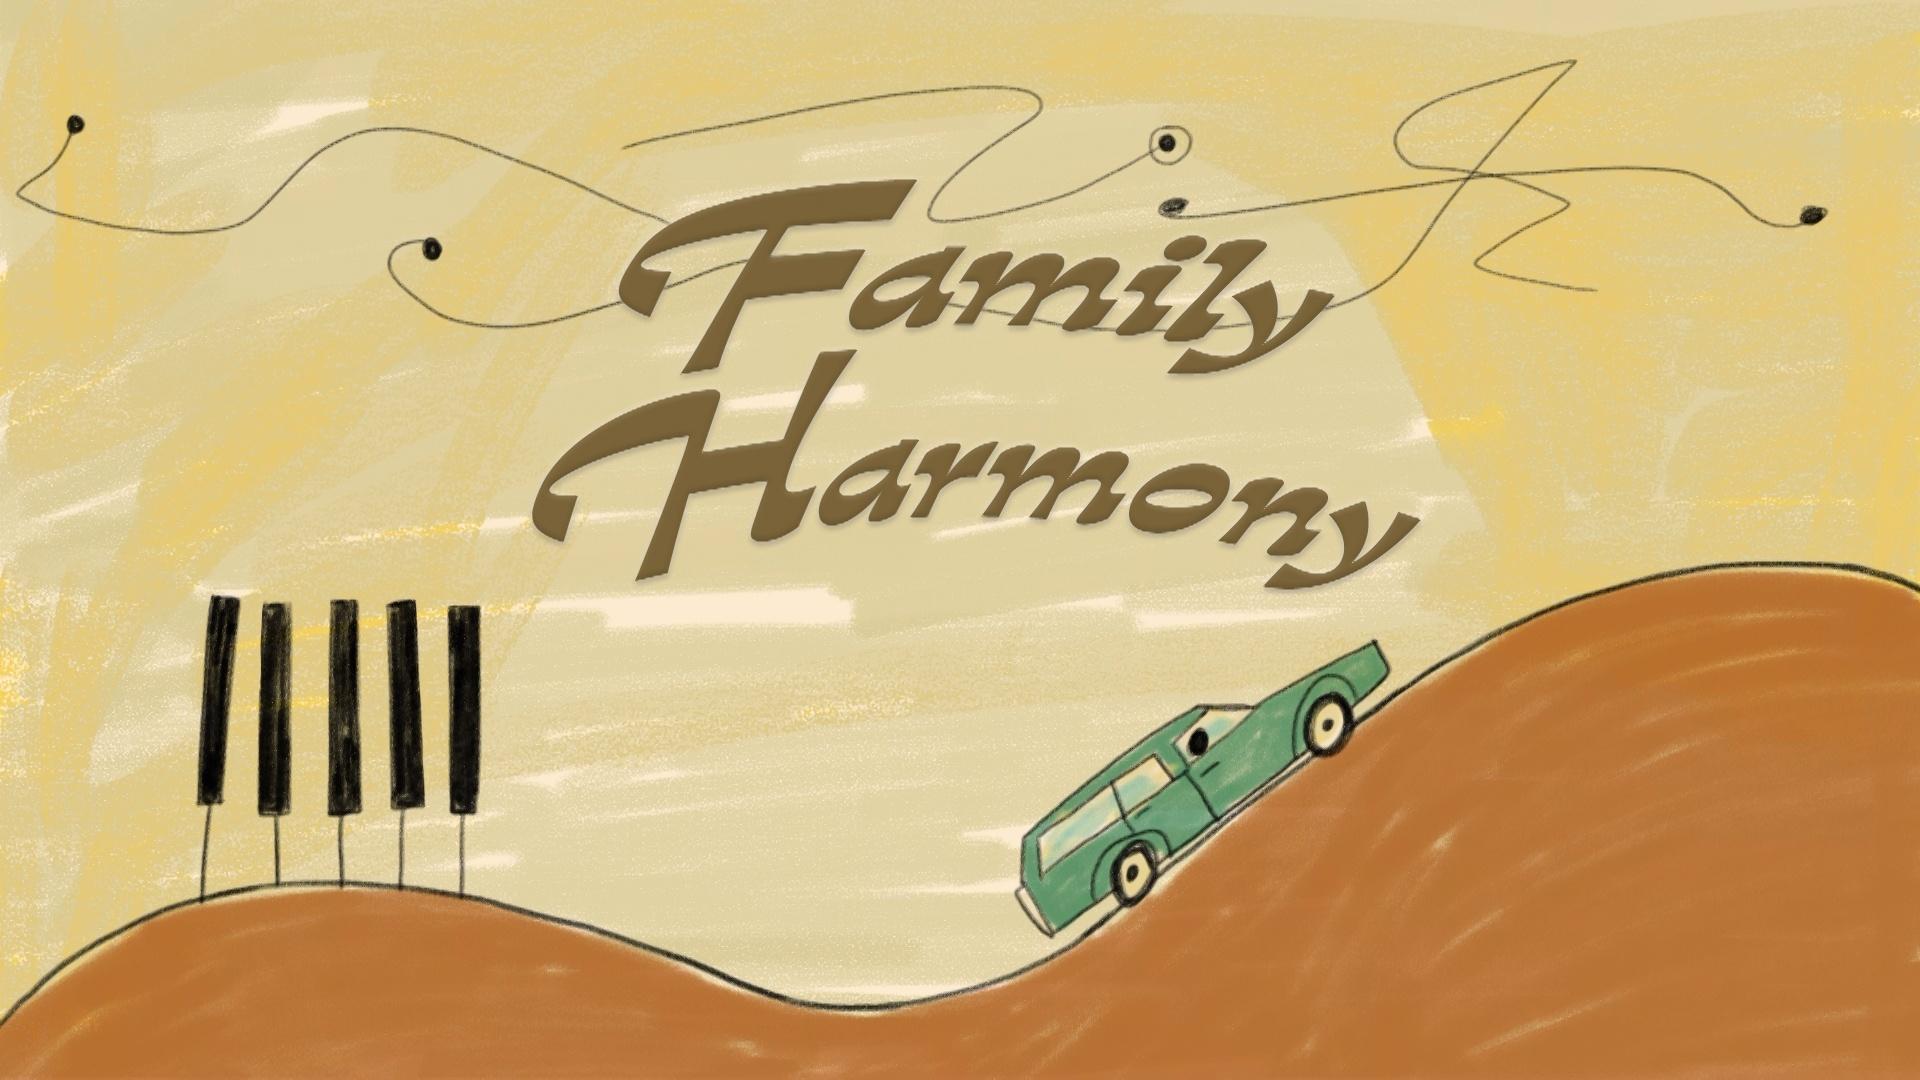 StoryCorps Shorts: Family Harmony